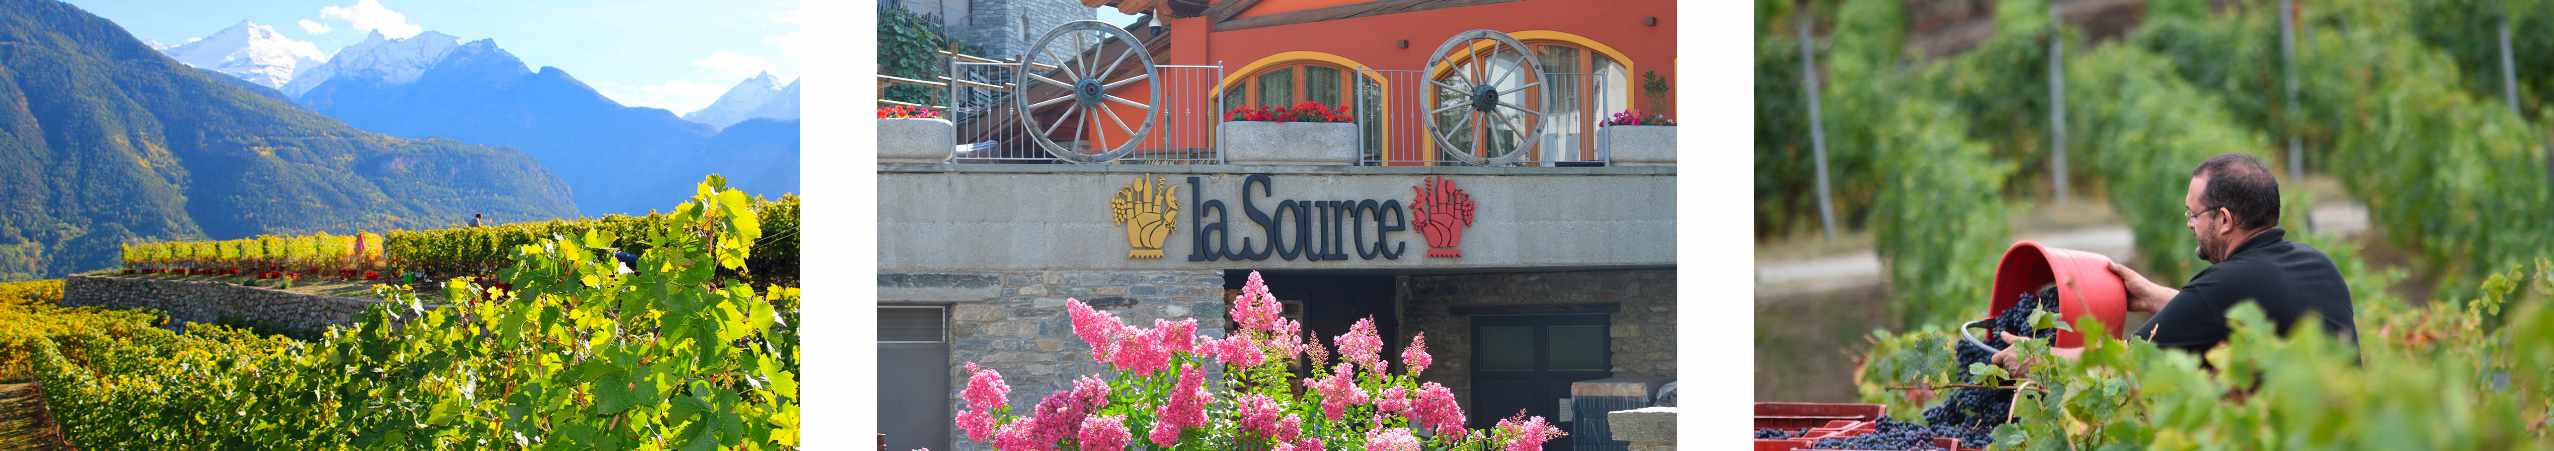 LA SOURCE - Saint-Pierre (AO) banner image